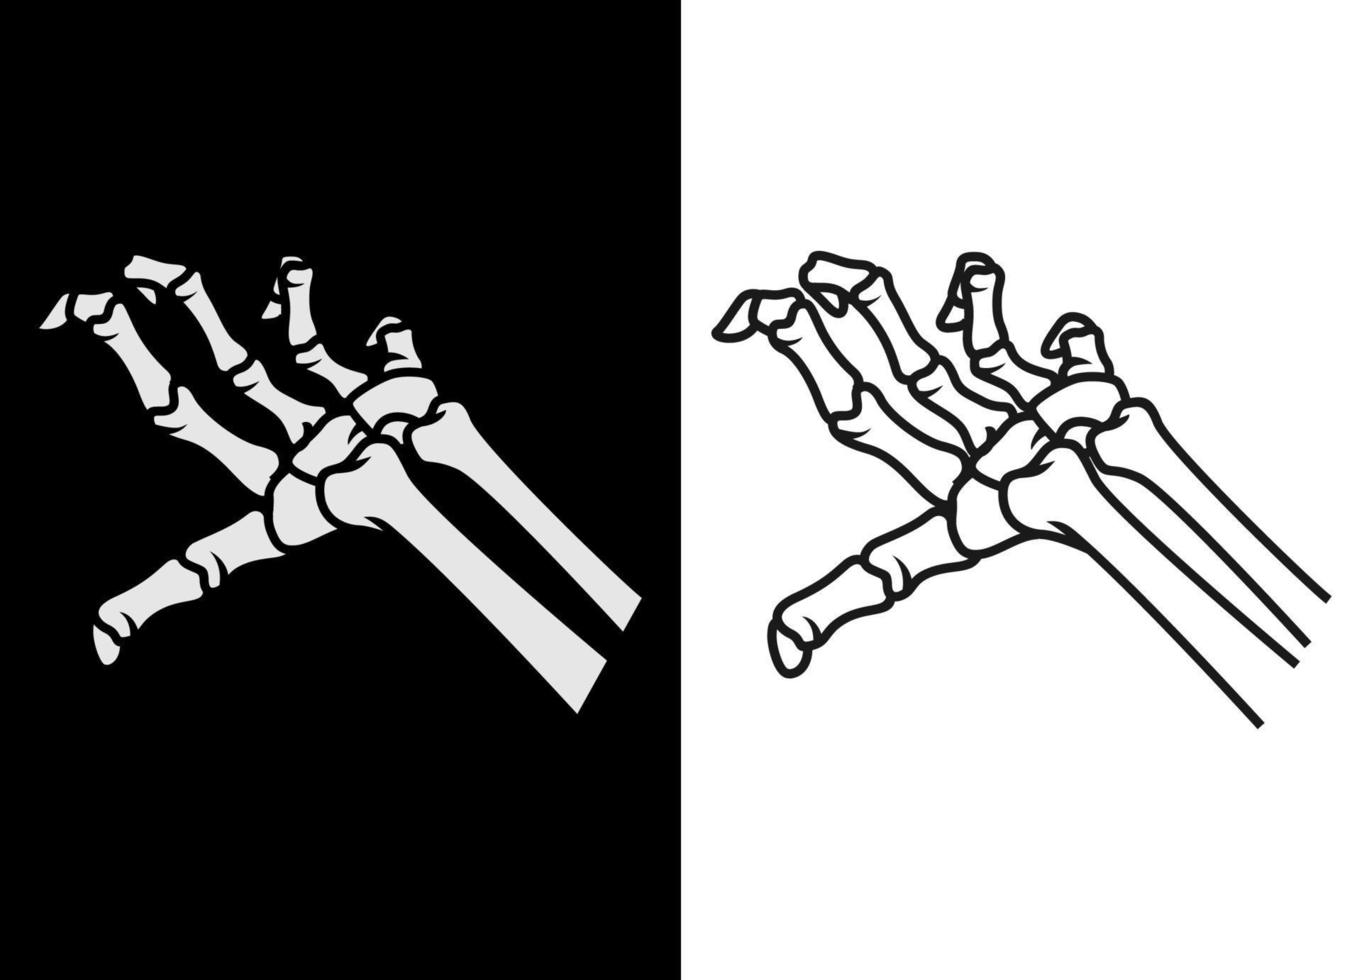 mano in bianco e nero dell'illustrazione di vettore di arte della linea del cranio umano. elemento rock per design di abbigliamento, poster, merchandising, band. vettore eps 10